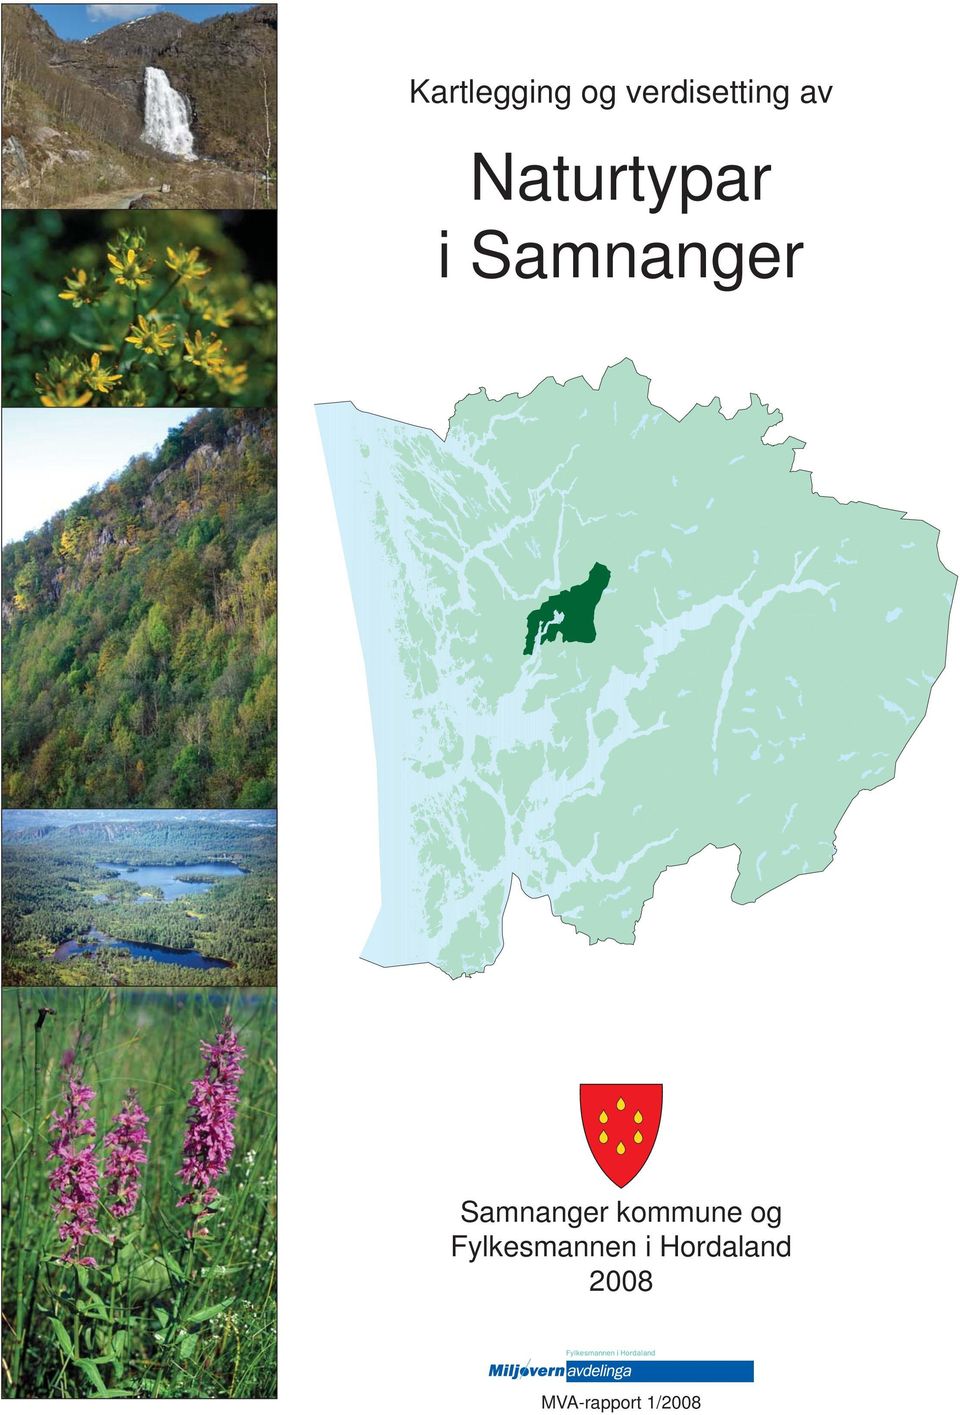 Samnanger kommune og